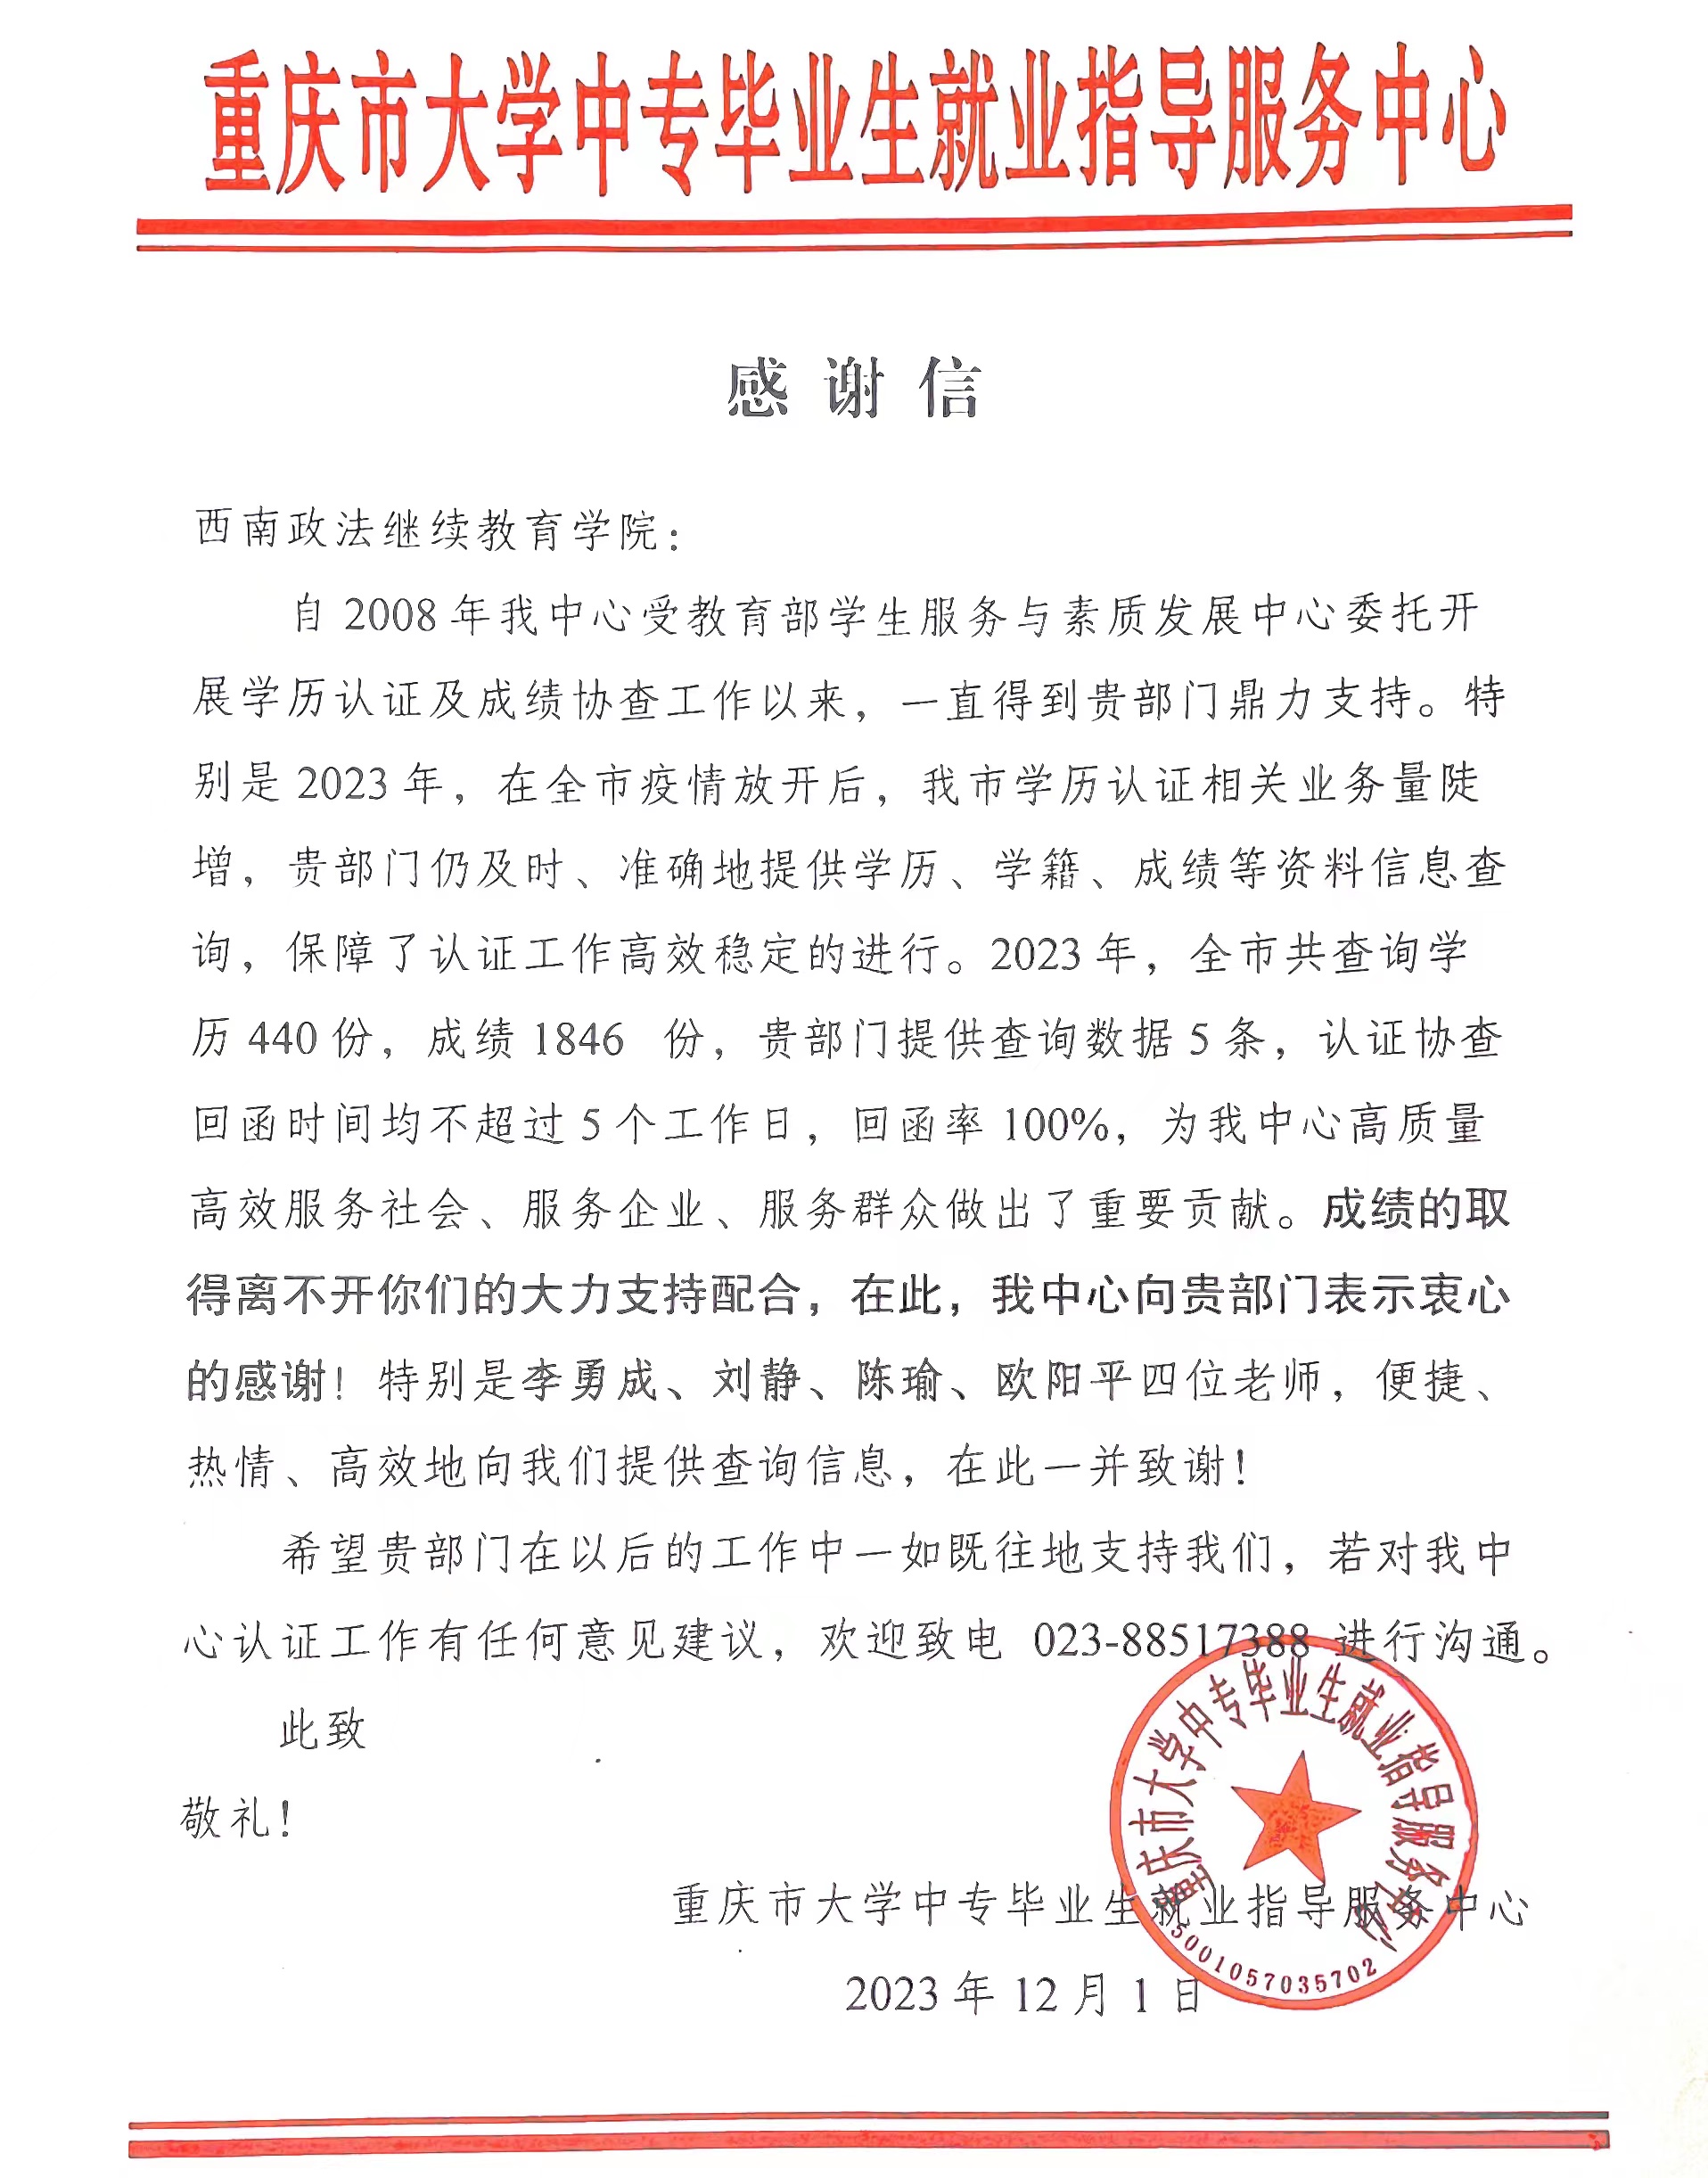 重庆市大学中专毕业生就业指导服务中心向我院发来感谢信